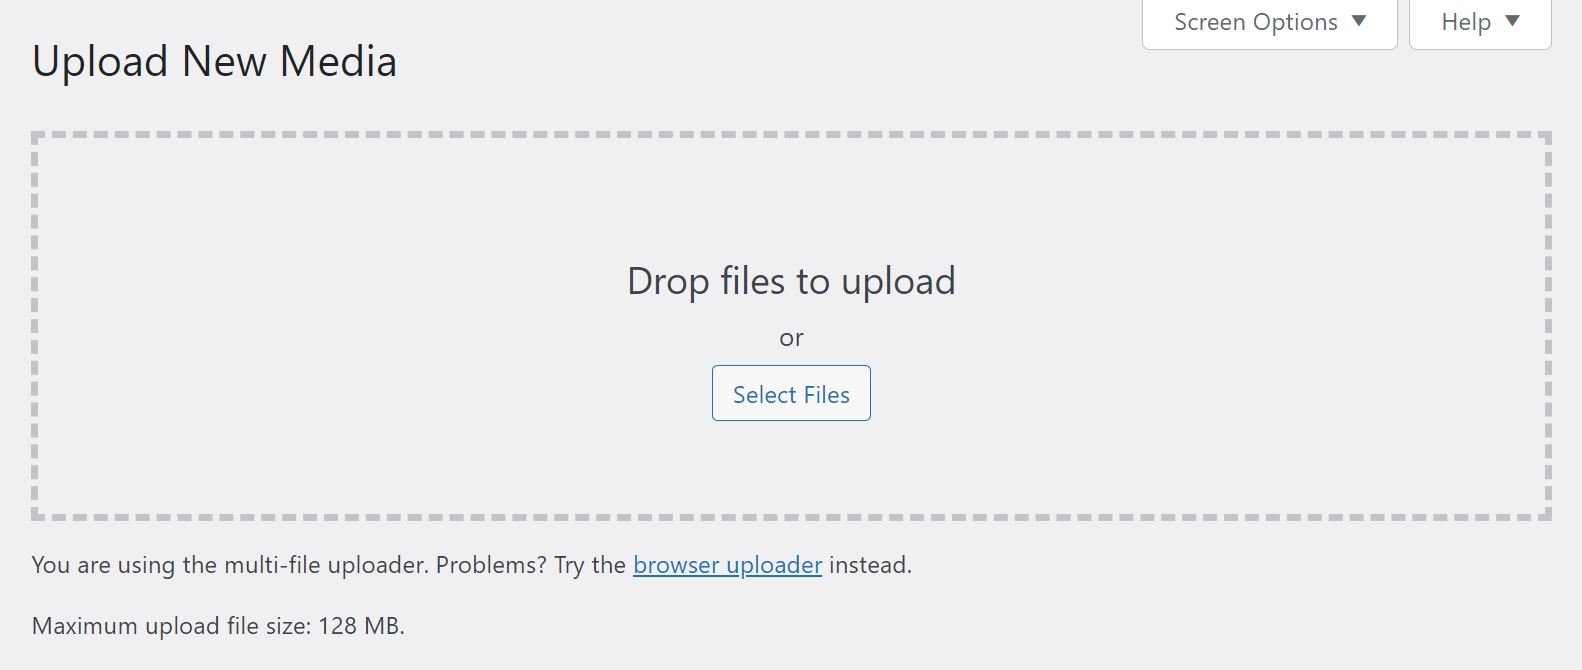 The maximum file size upload